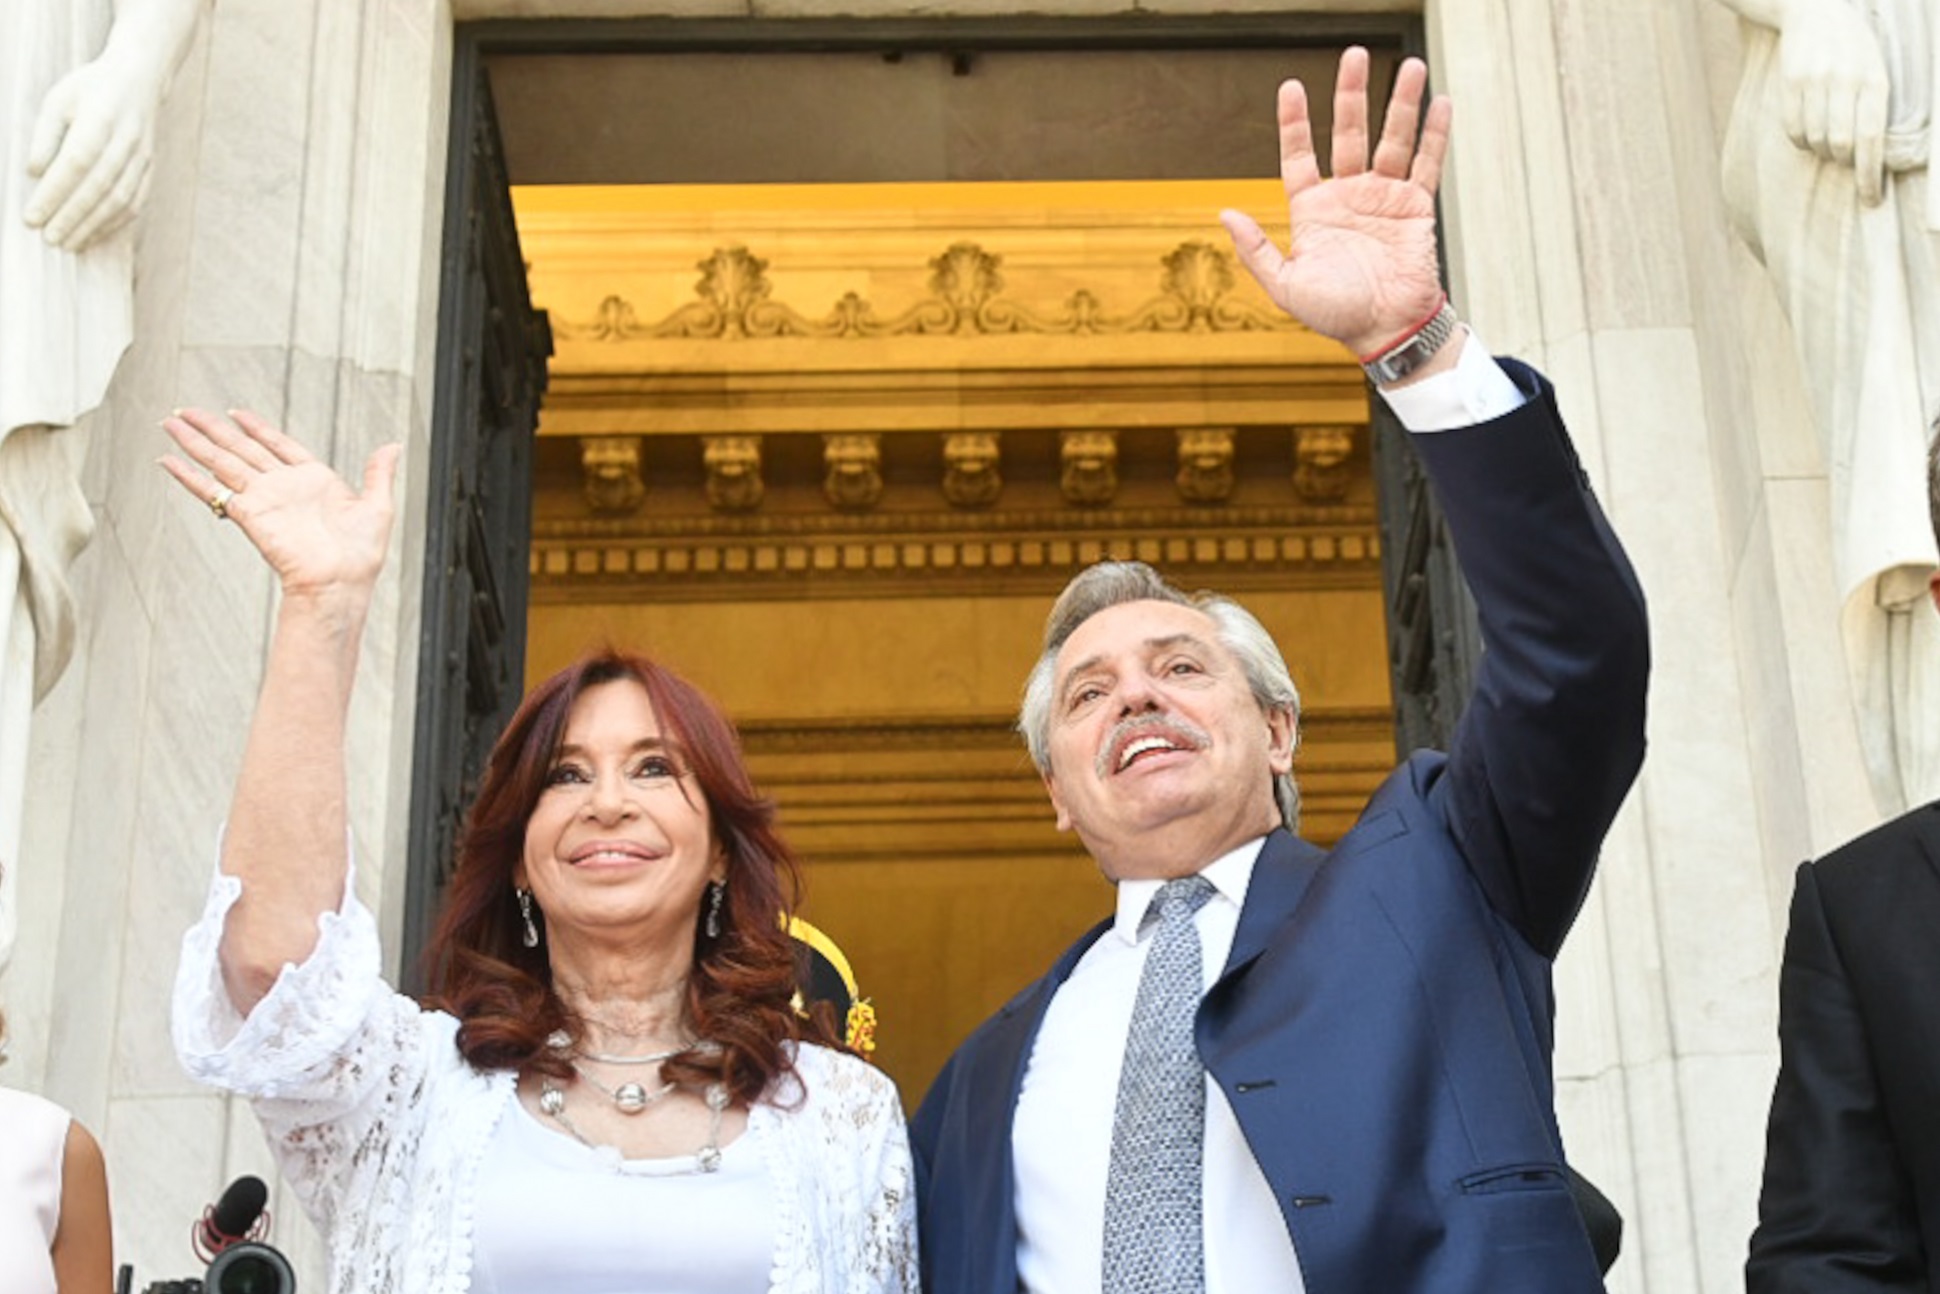 “Gobernamos con convicciones firmes y con el pragmatismo necesario para saber qué es lo mejor para los argentinos y argentinas”, dijo el presidente